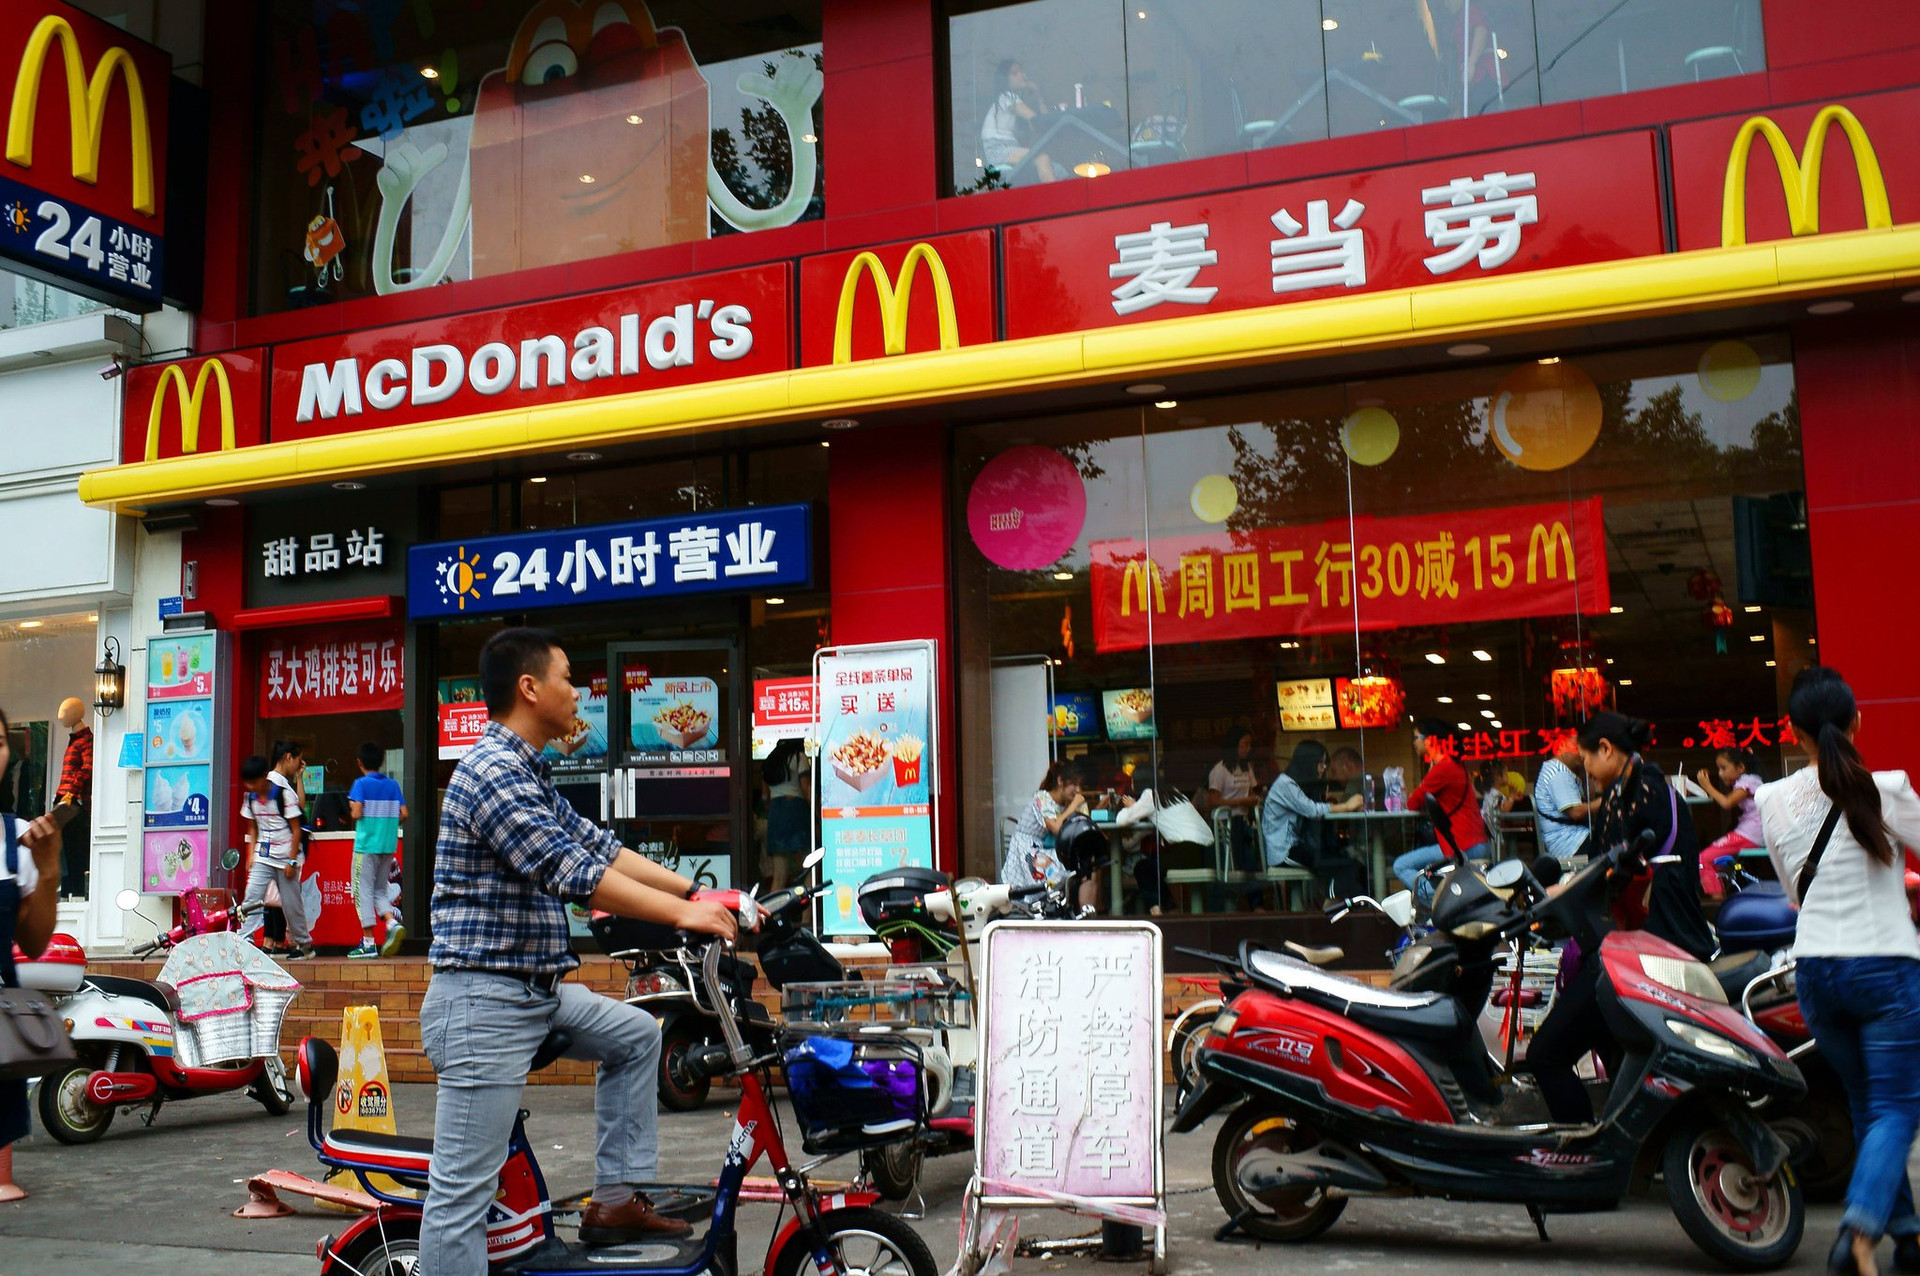 Làm mưa làm gió trên thế giới nhưng thất bại tại Việt Nam: McDolnald's ngừng bán Burger vì không thể cạnh tranh nổi với bánh mì? - Ảnh 1.